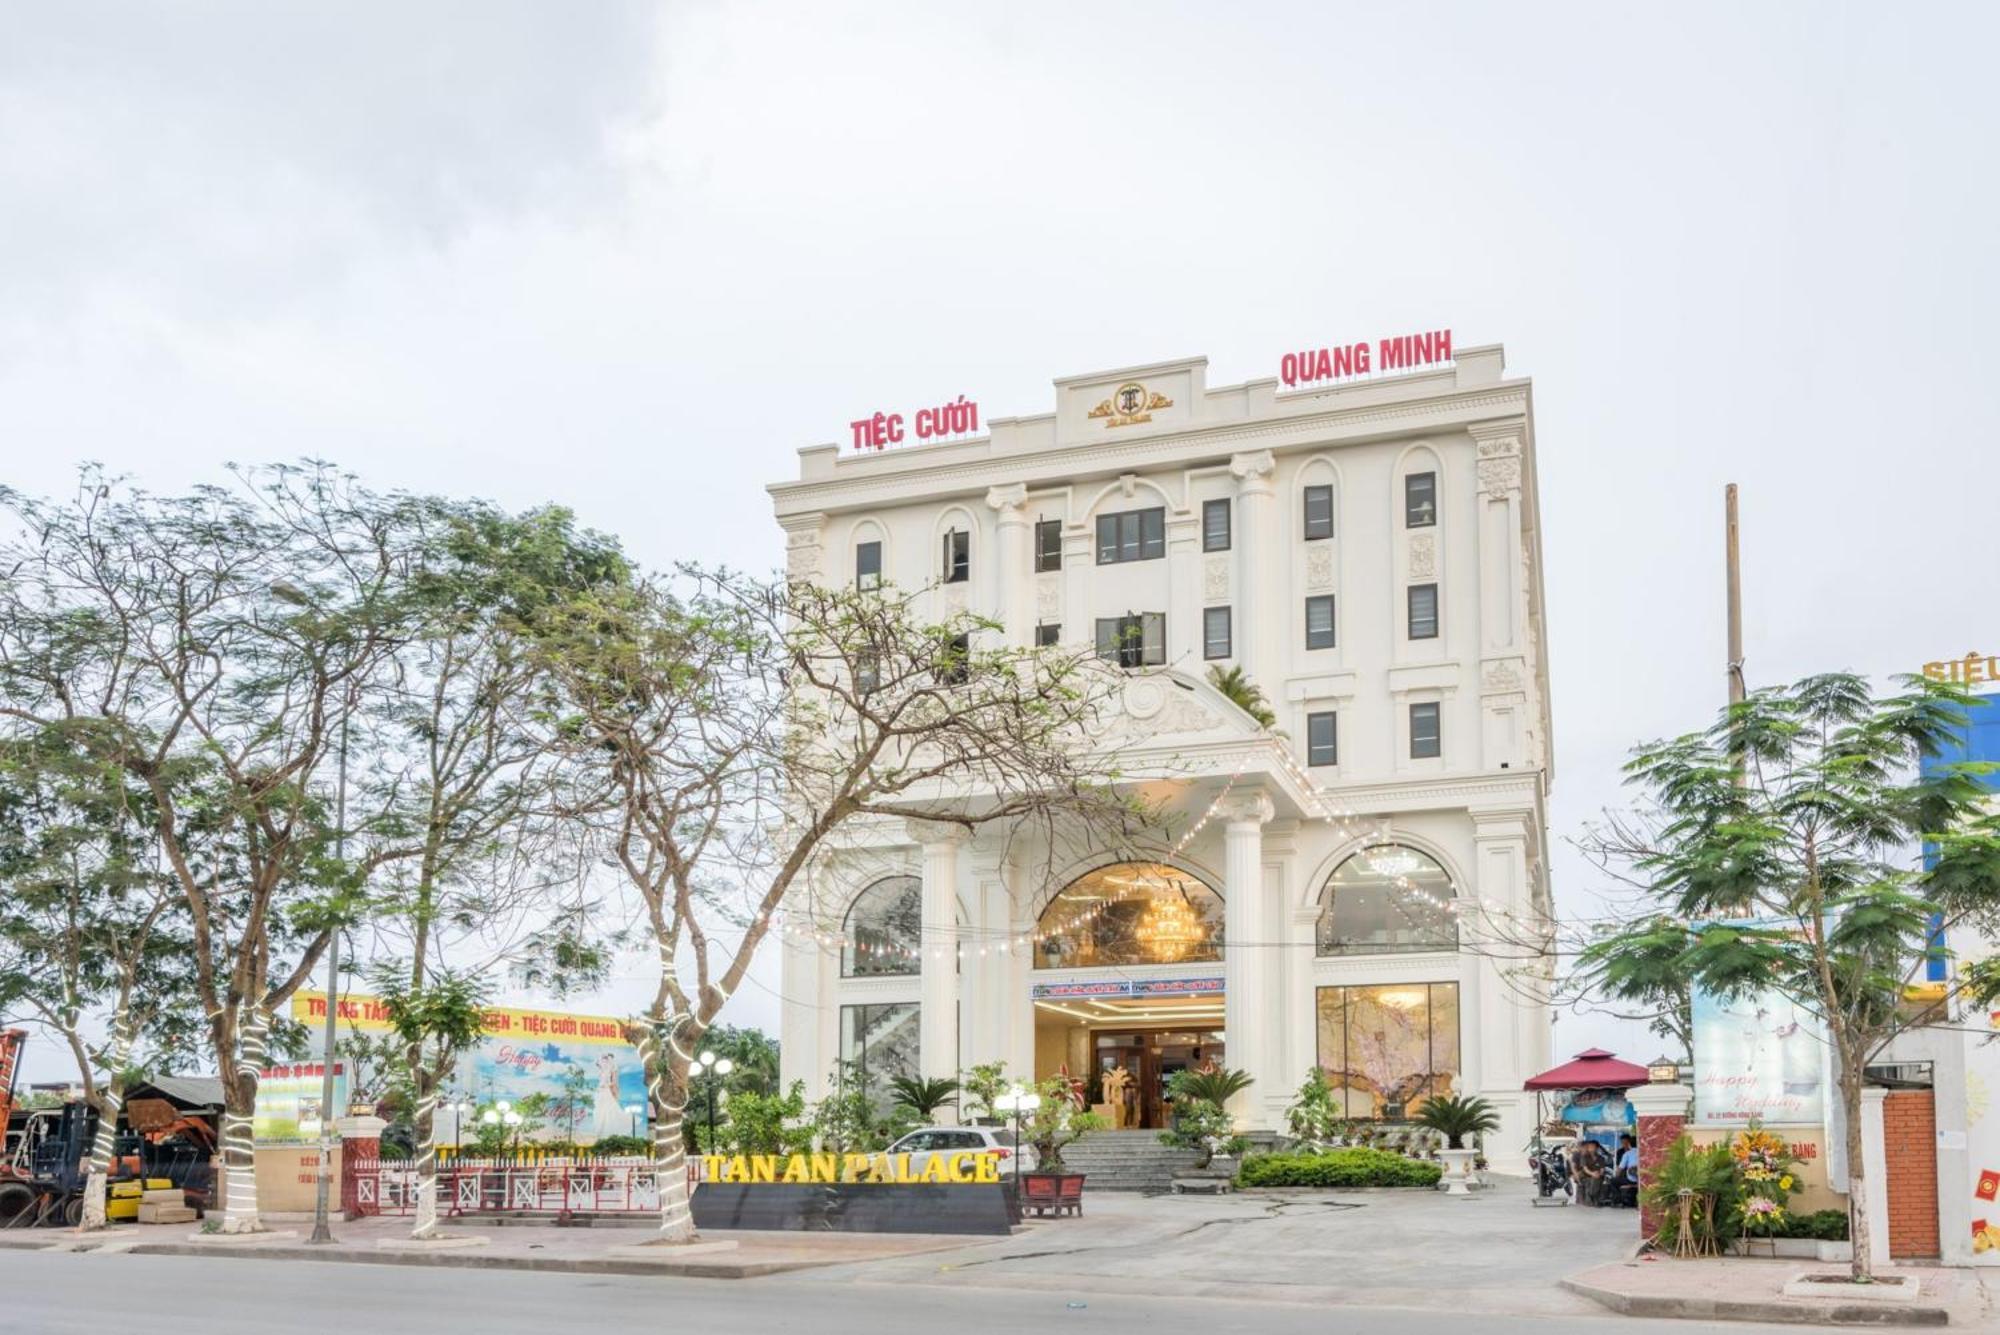 هاي فونج Tan An Palace المظهر الخارجي الصورة